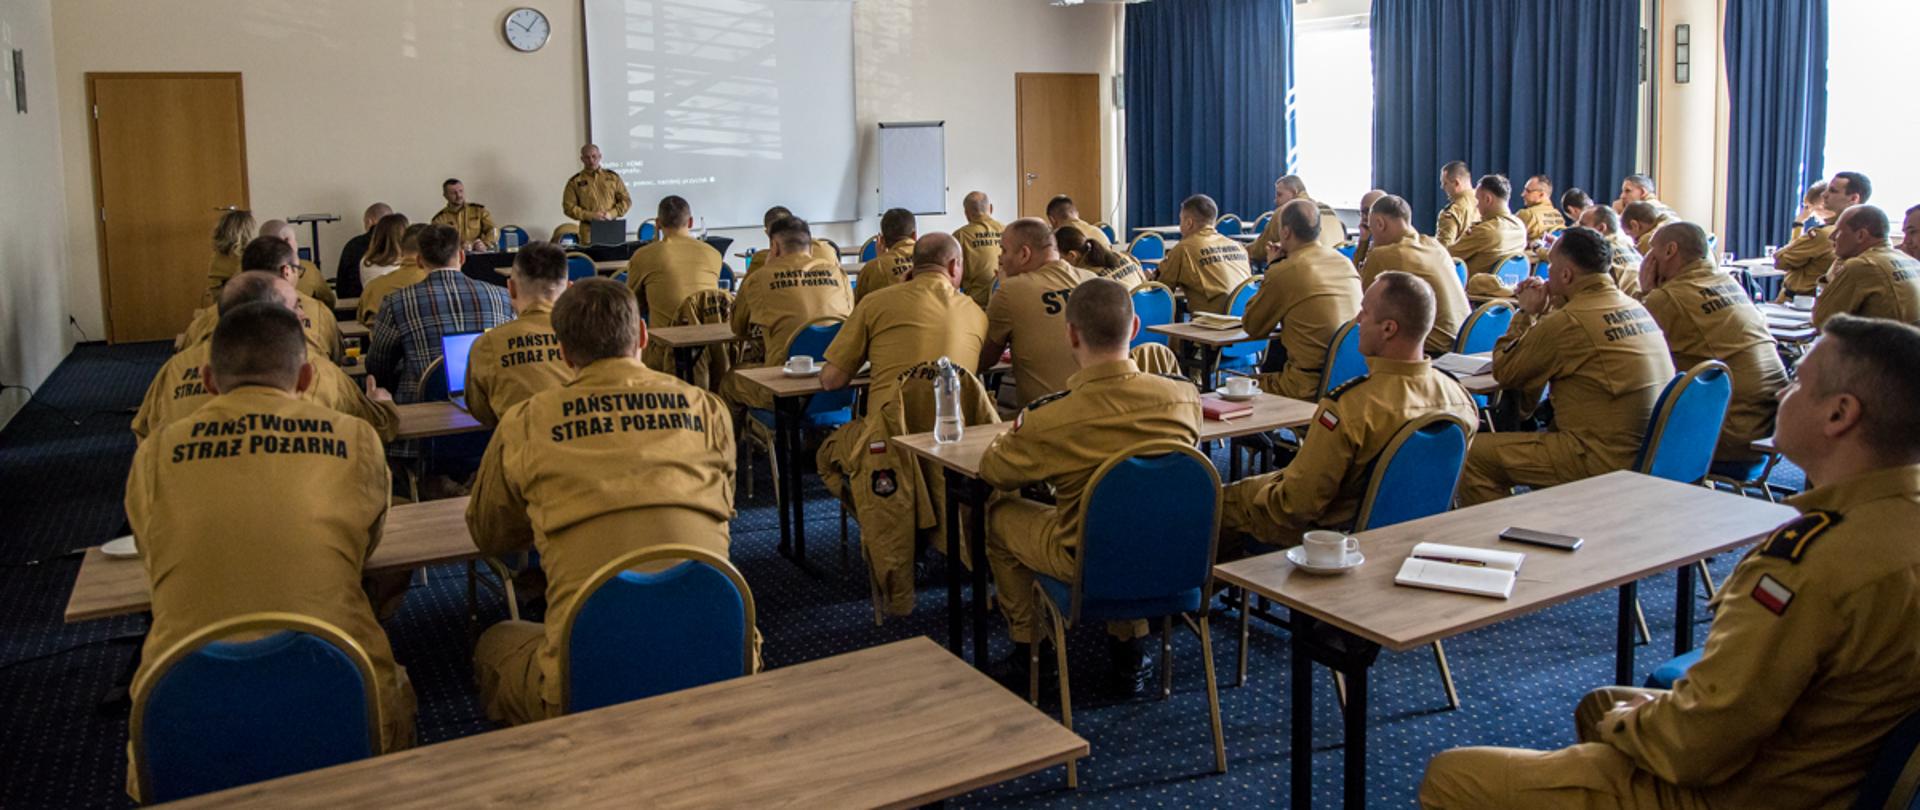 Funkcjonariusze PSP w ubraniach służbowych i sztabowych oraz pracownicy cywilni KW PSP siedzą na sali konferencyjnej podczas narady służbowo - szkoleniowej, która odbywała się dla pionu operacyjno-szkoleniowego PSP województwa opolskiego. 